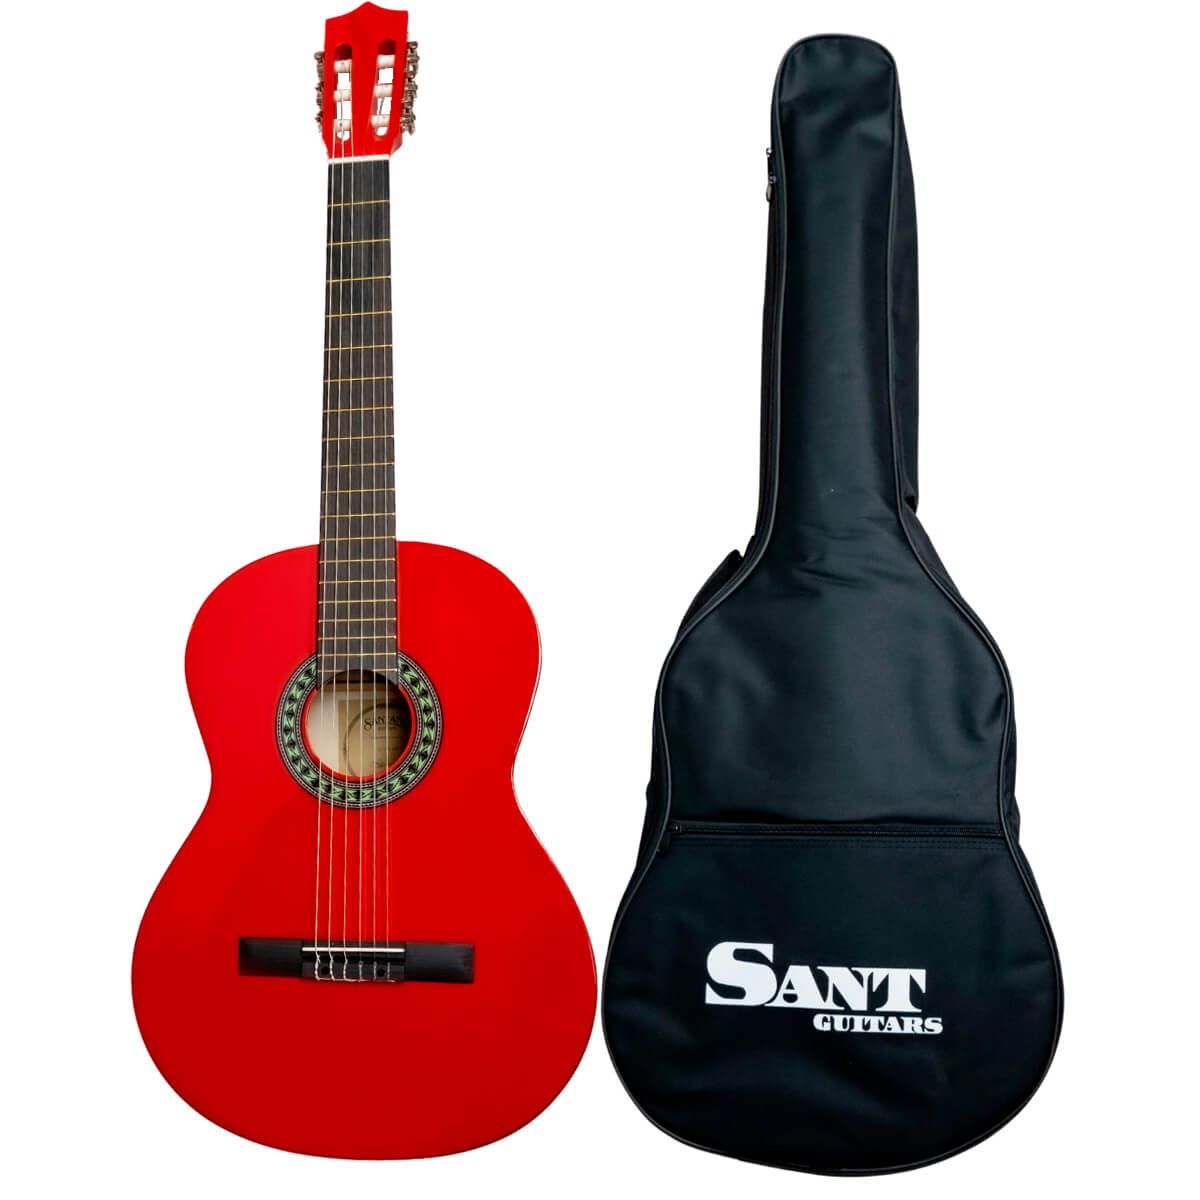 Køb Sant Guitars CL-50-RD - Spansk guitar - Rød - Pris 895.00 kr.